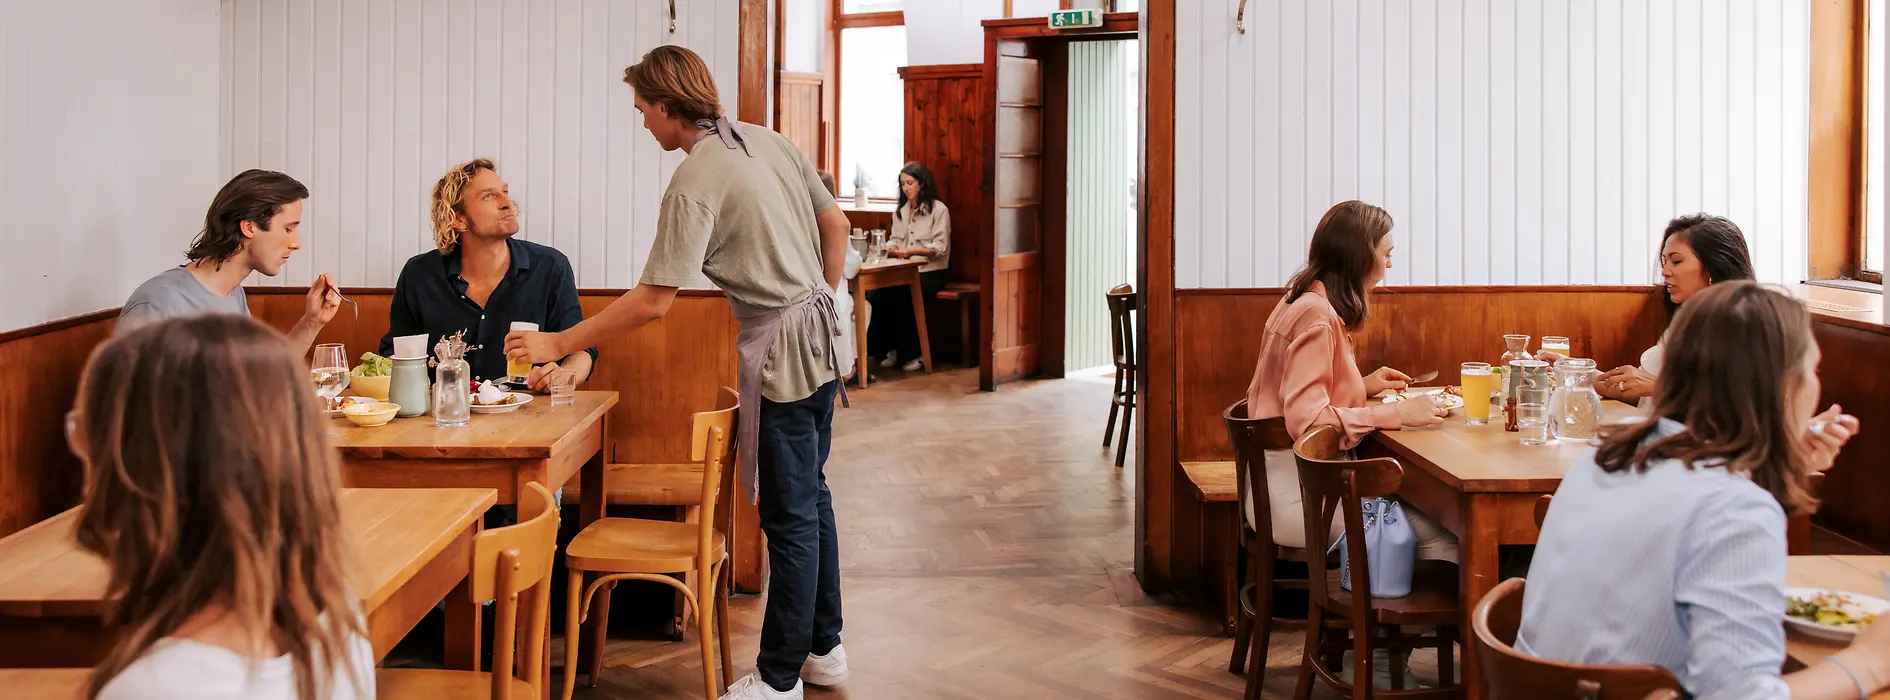 Stuwerviertel, restaurante Brösl, vista interior, clientes